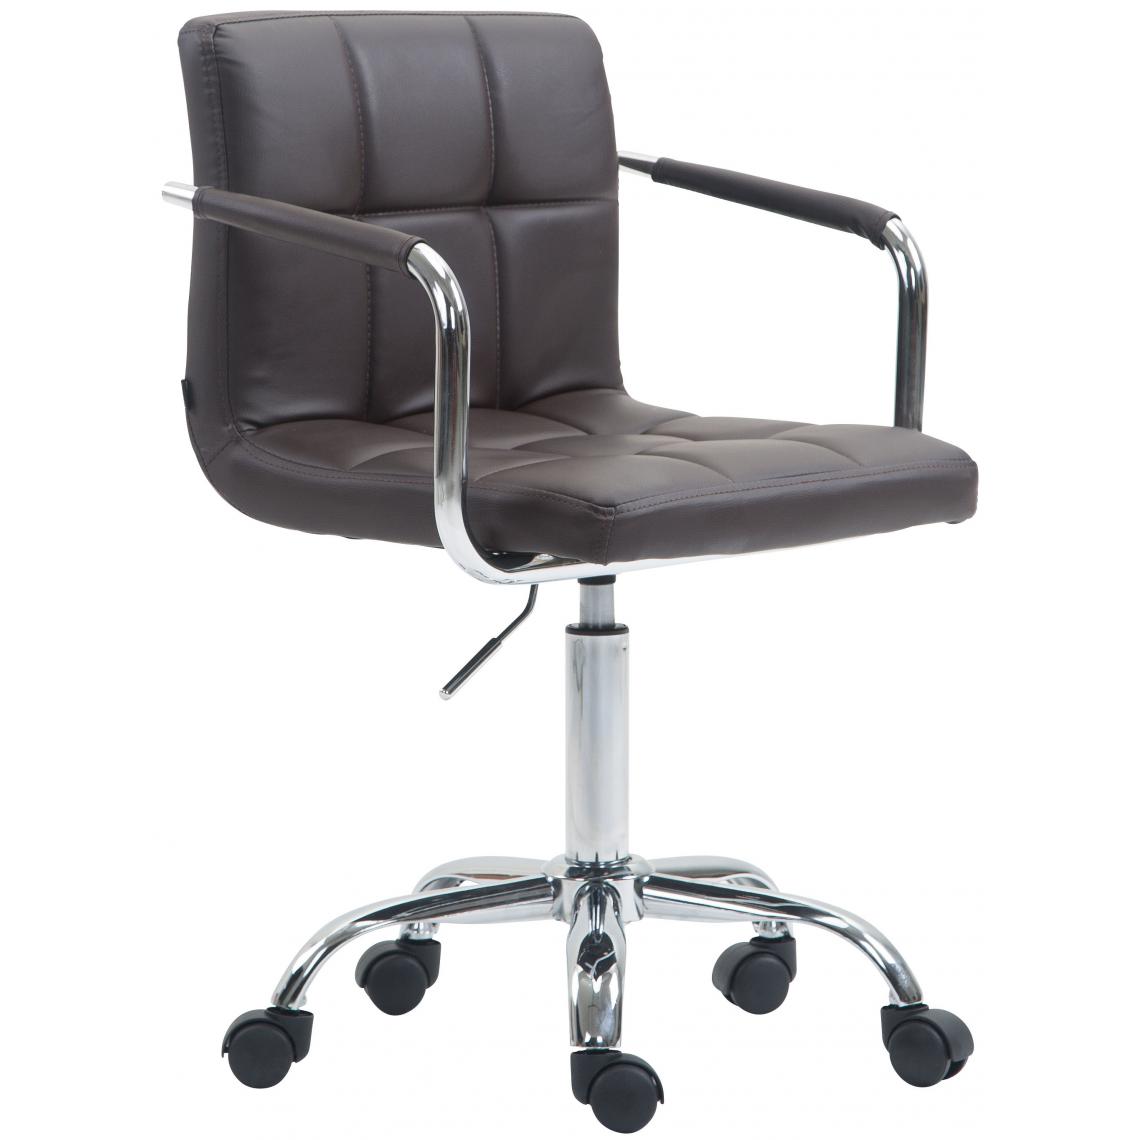 Icaverne - Magnifique Chaise de bureau categorie Windhoek V2 simili cuir couleur marron - Chaises